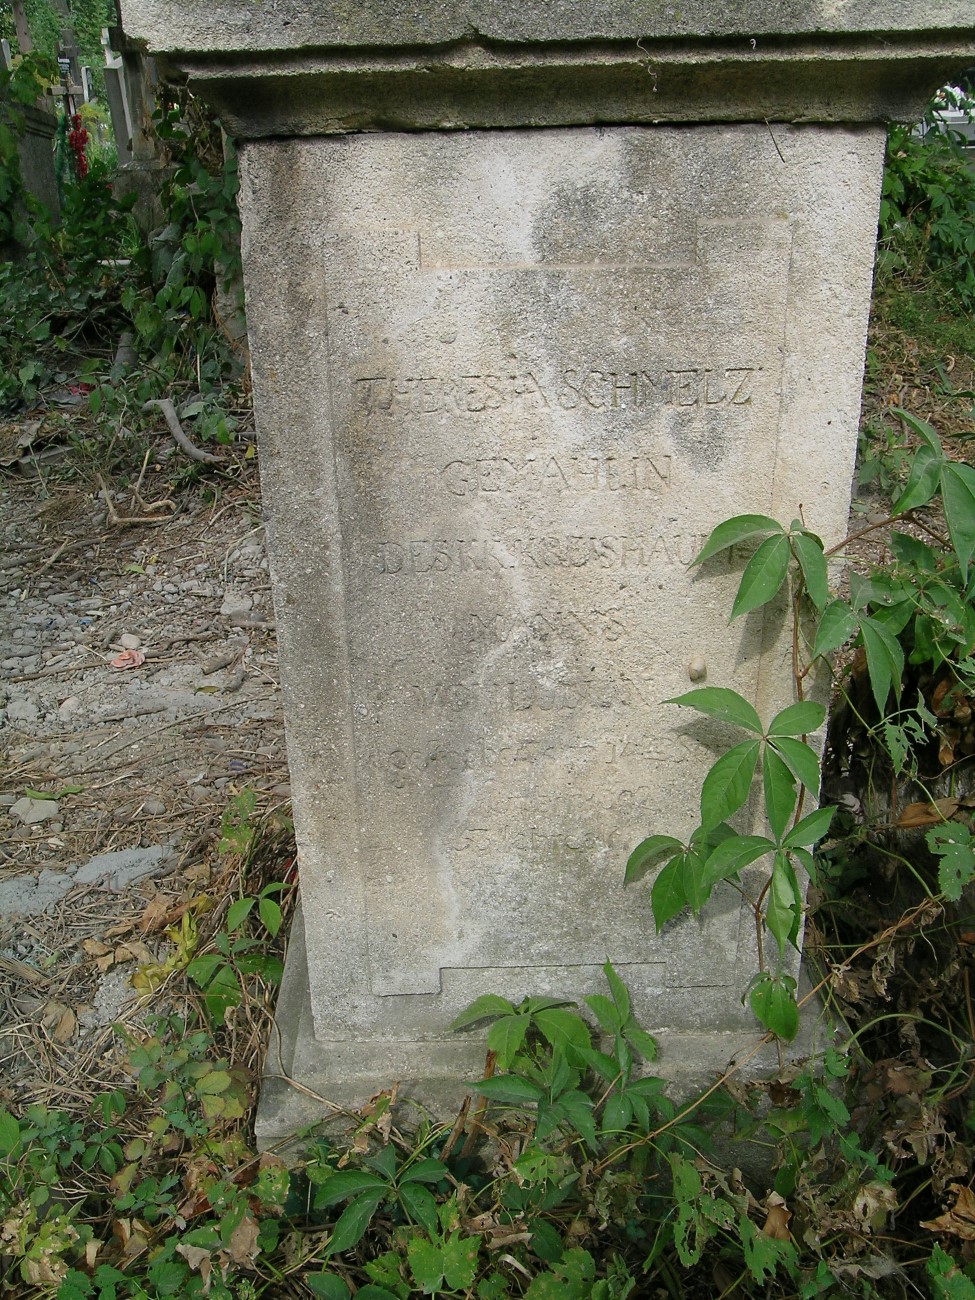 Tombstone of Theresia Schmelz, Zaleszczyki cemetery, as of 2019.